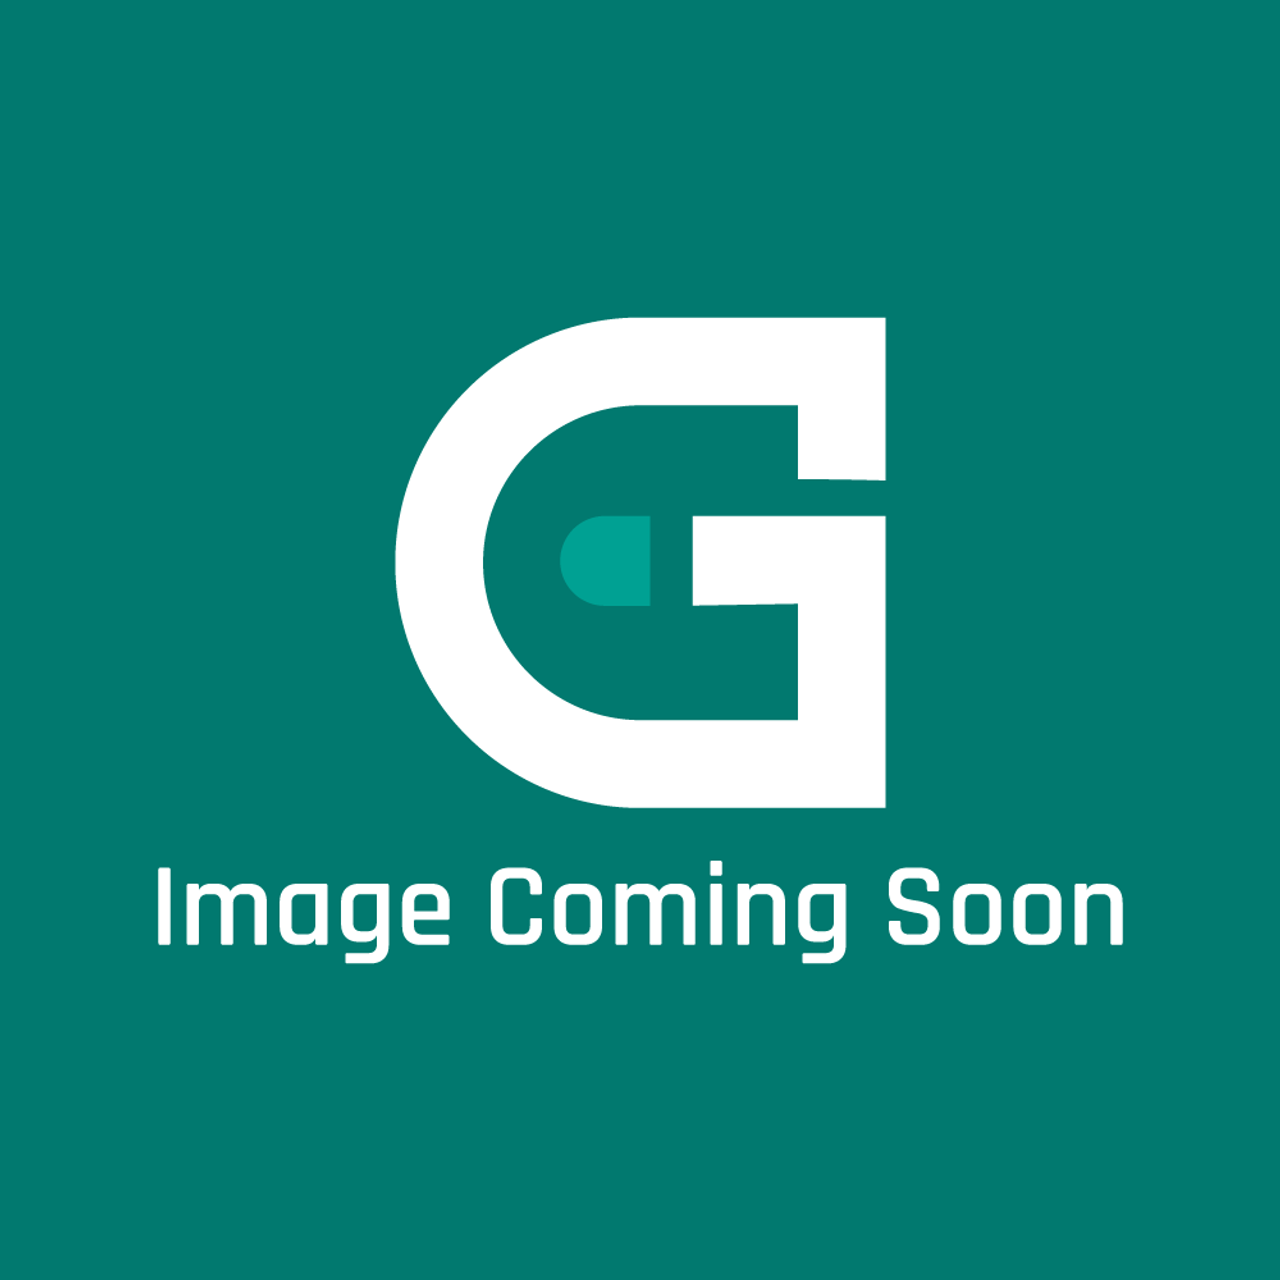 AGA Marvel A4782 - Fastener Kit Gc3 P/F Uk/Europe - Image Coming Soon!